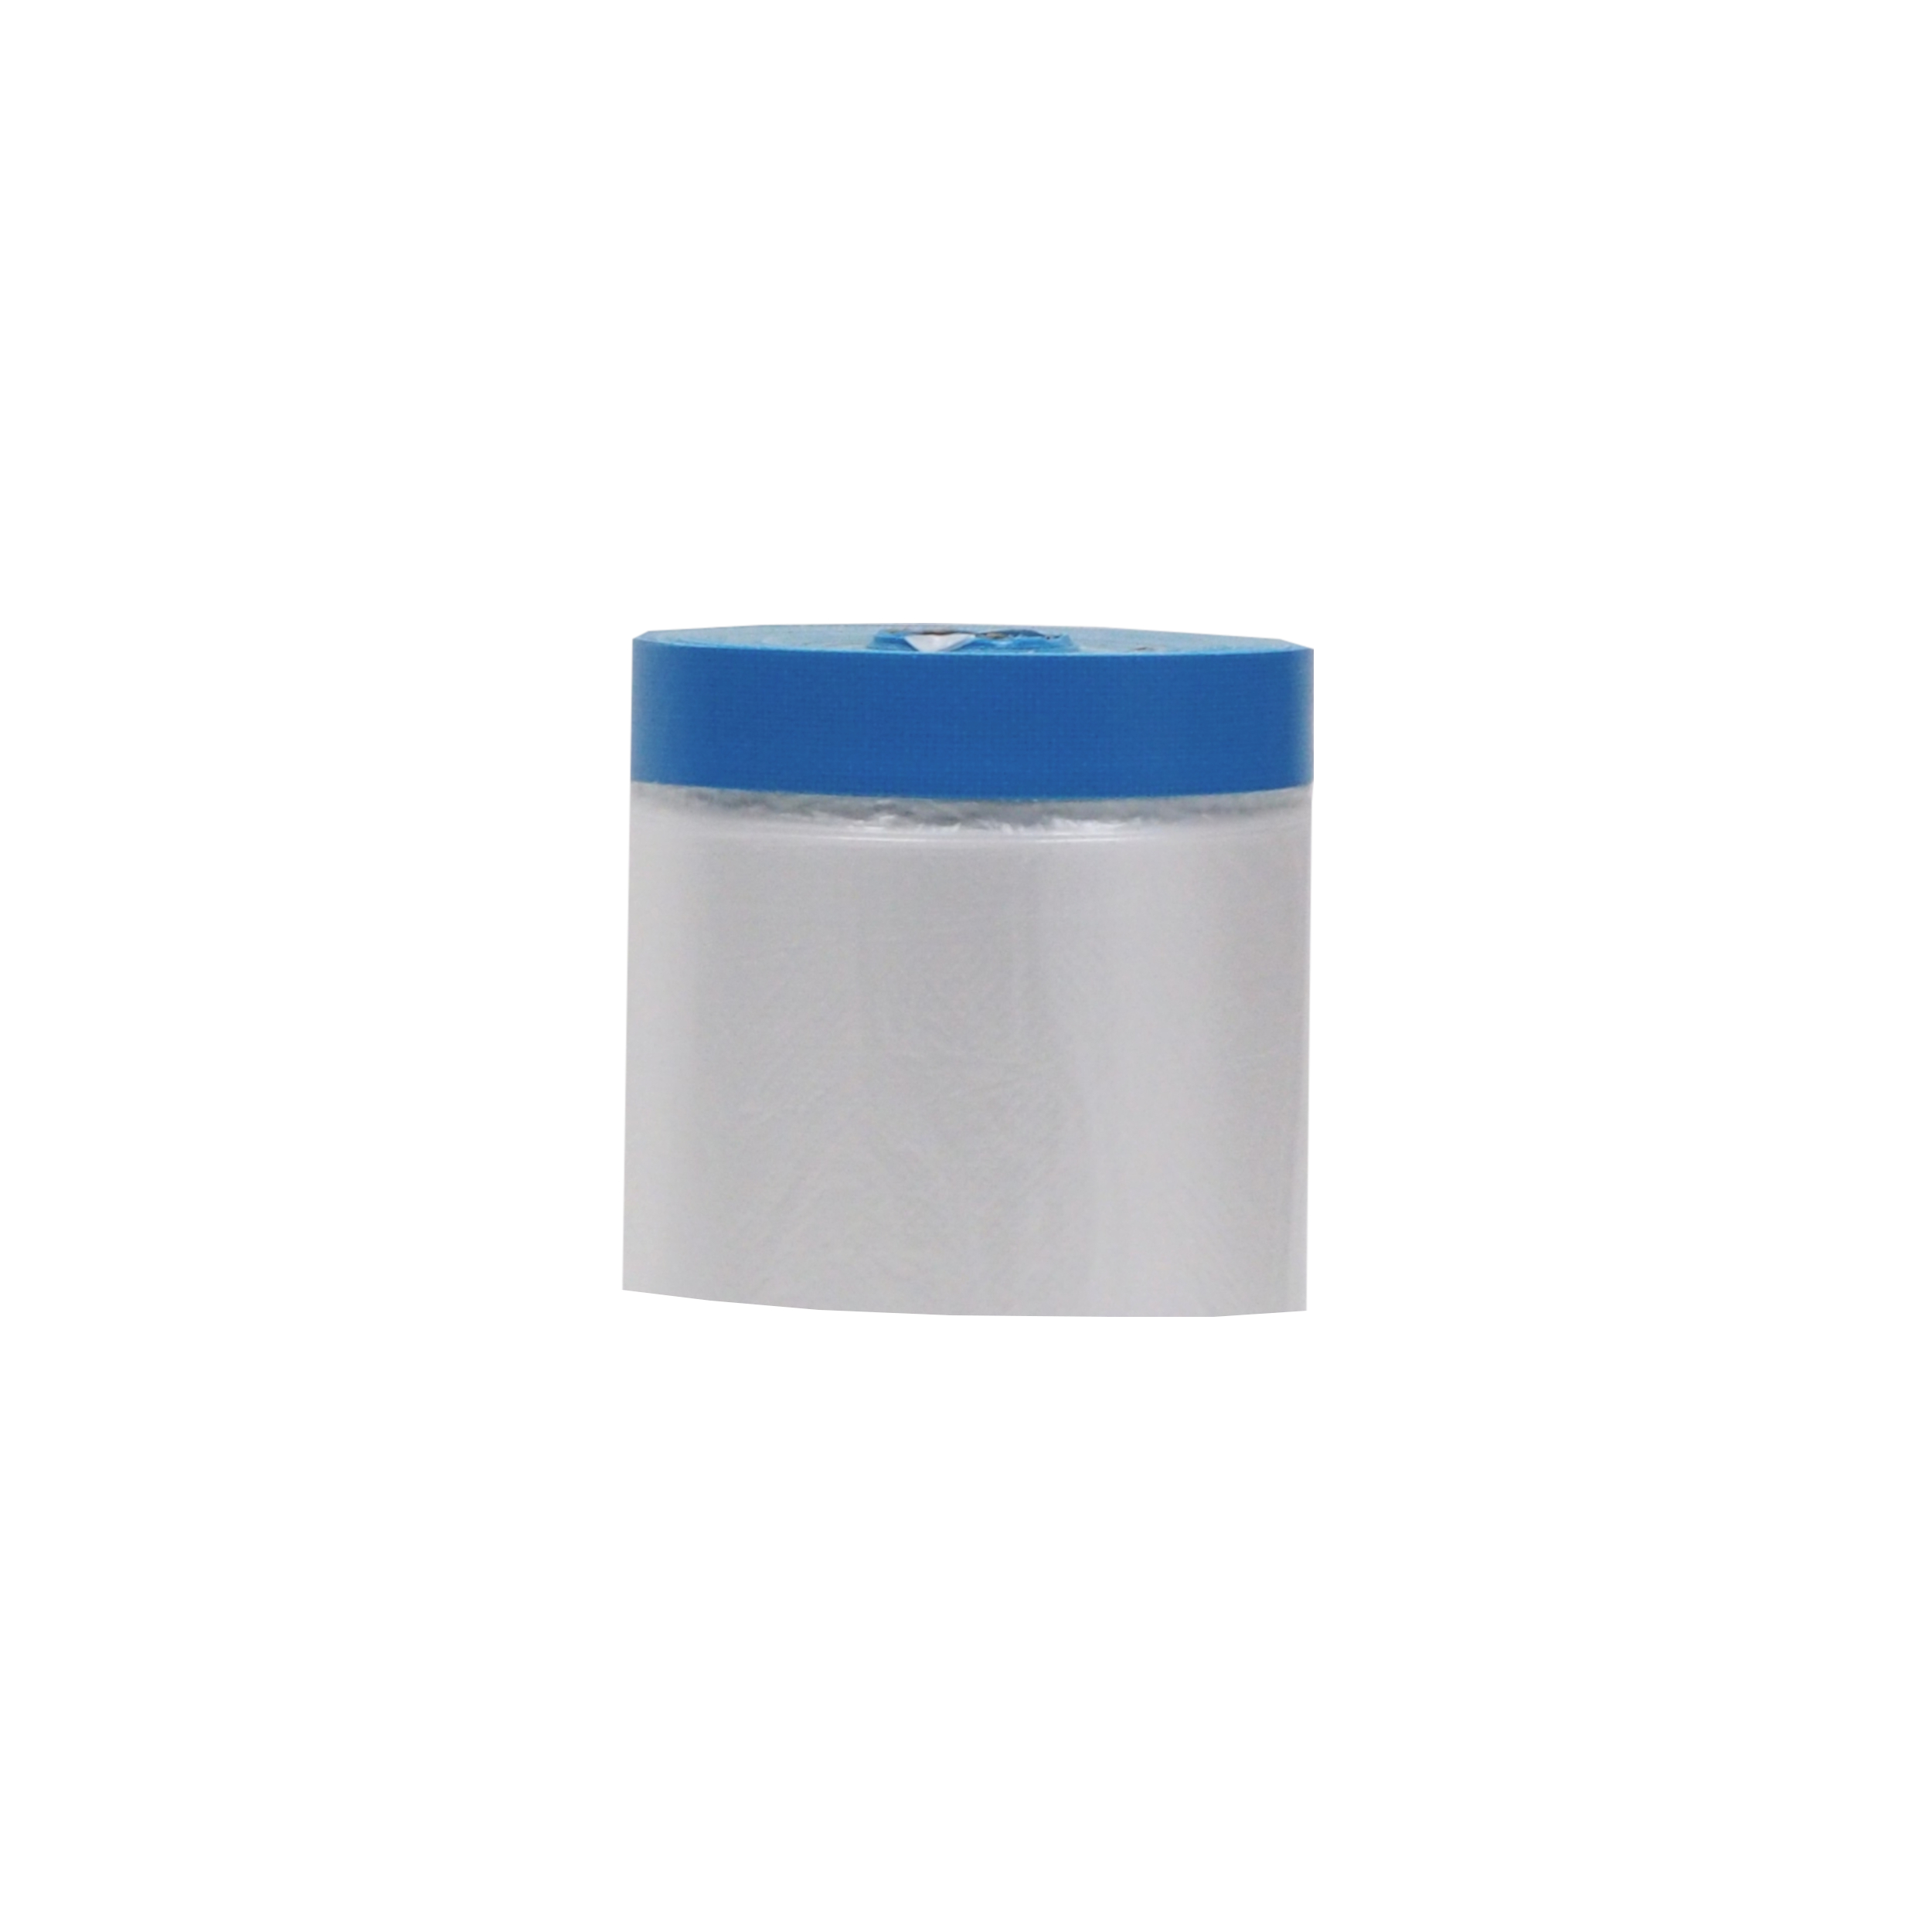 páska lepicí Targa blue mask, se zakrývací fólií, 55 cm x 20 m 0.19 Kg TOP Sklad4 701413 9